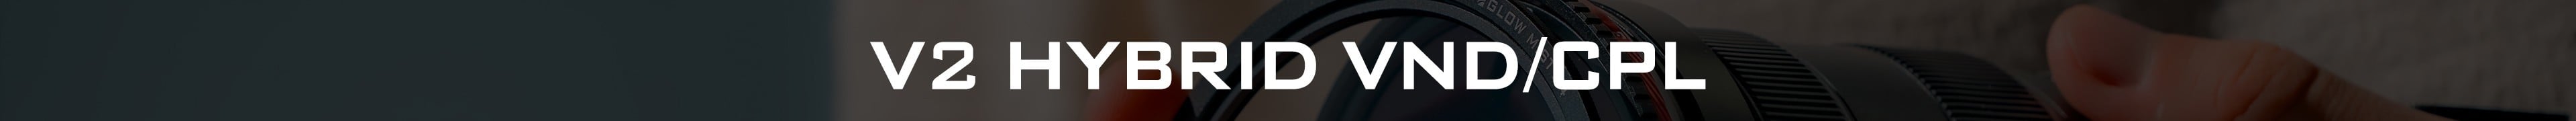 V2 Hybrid VND/CPL